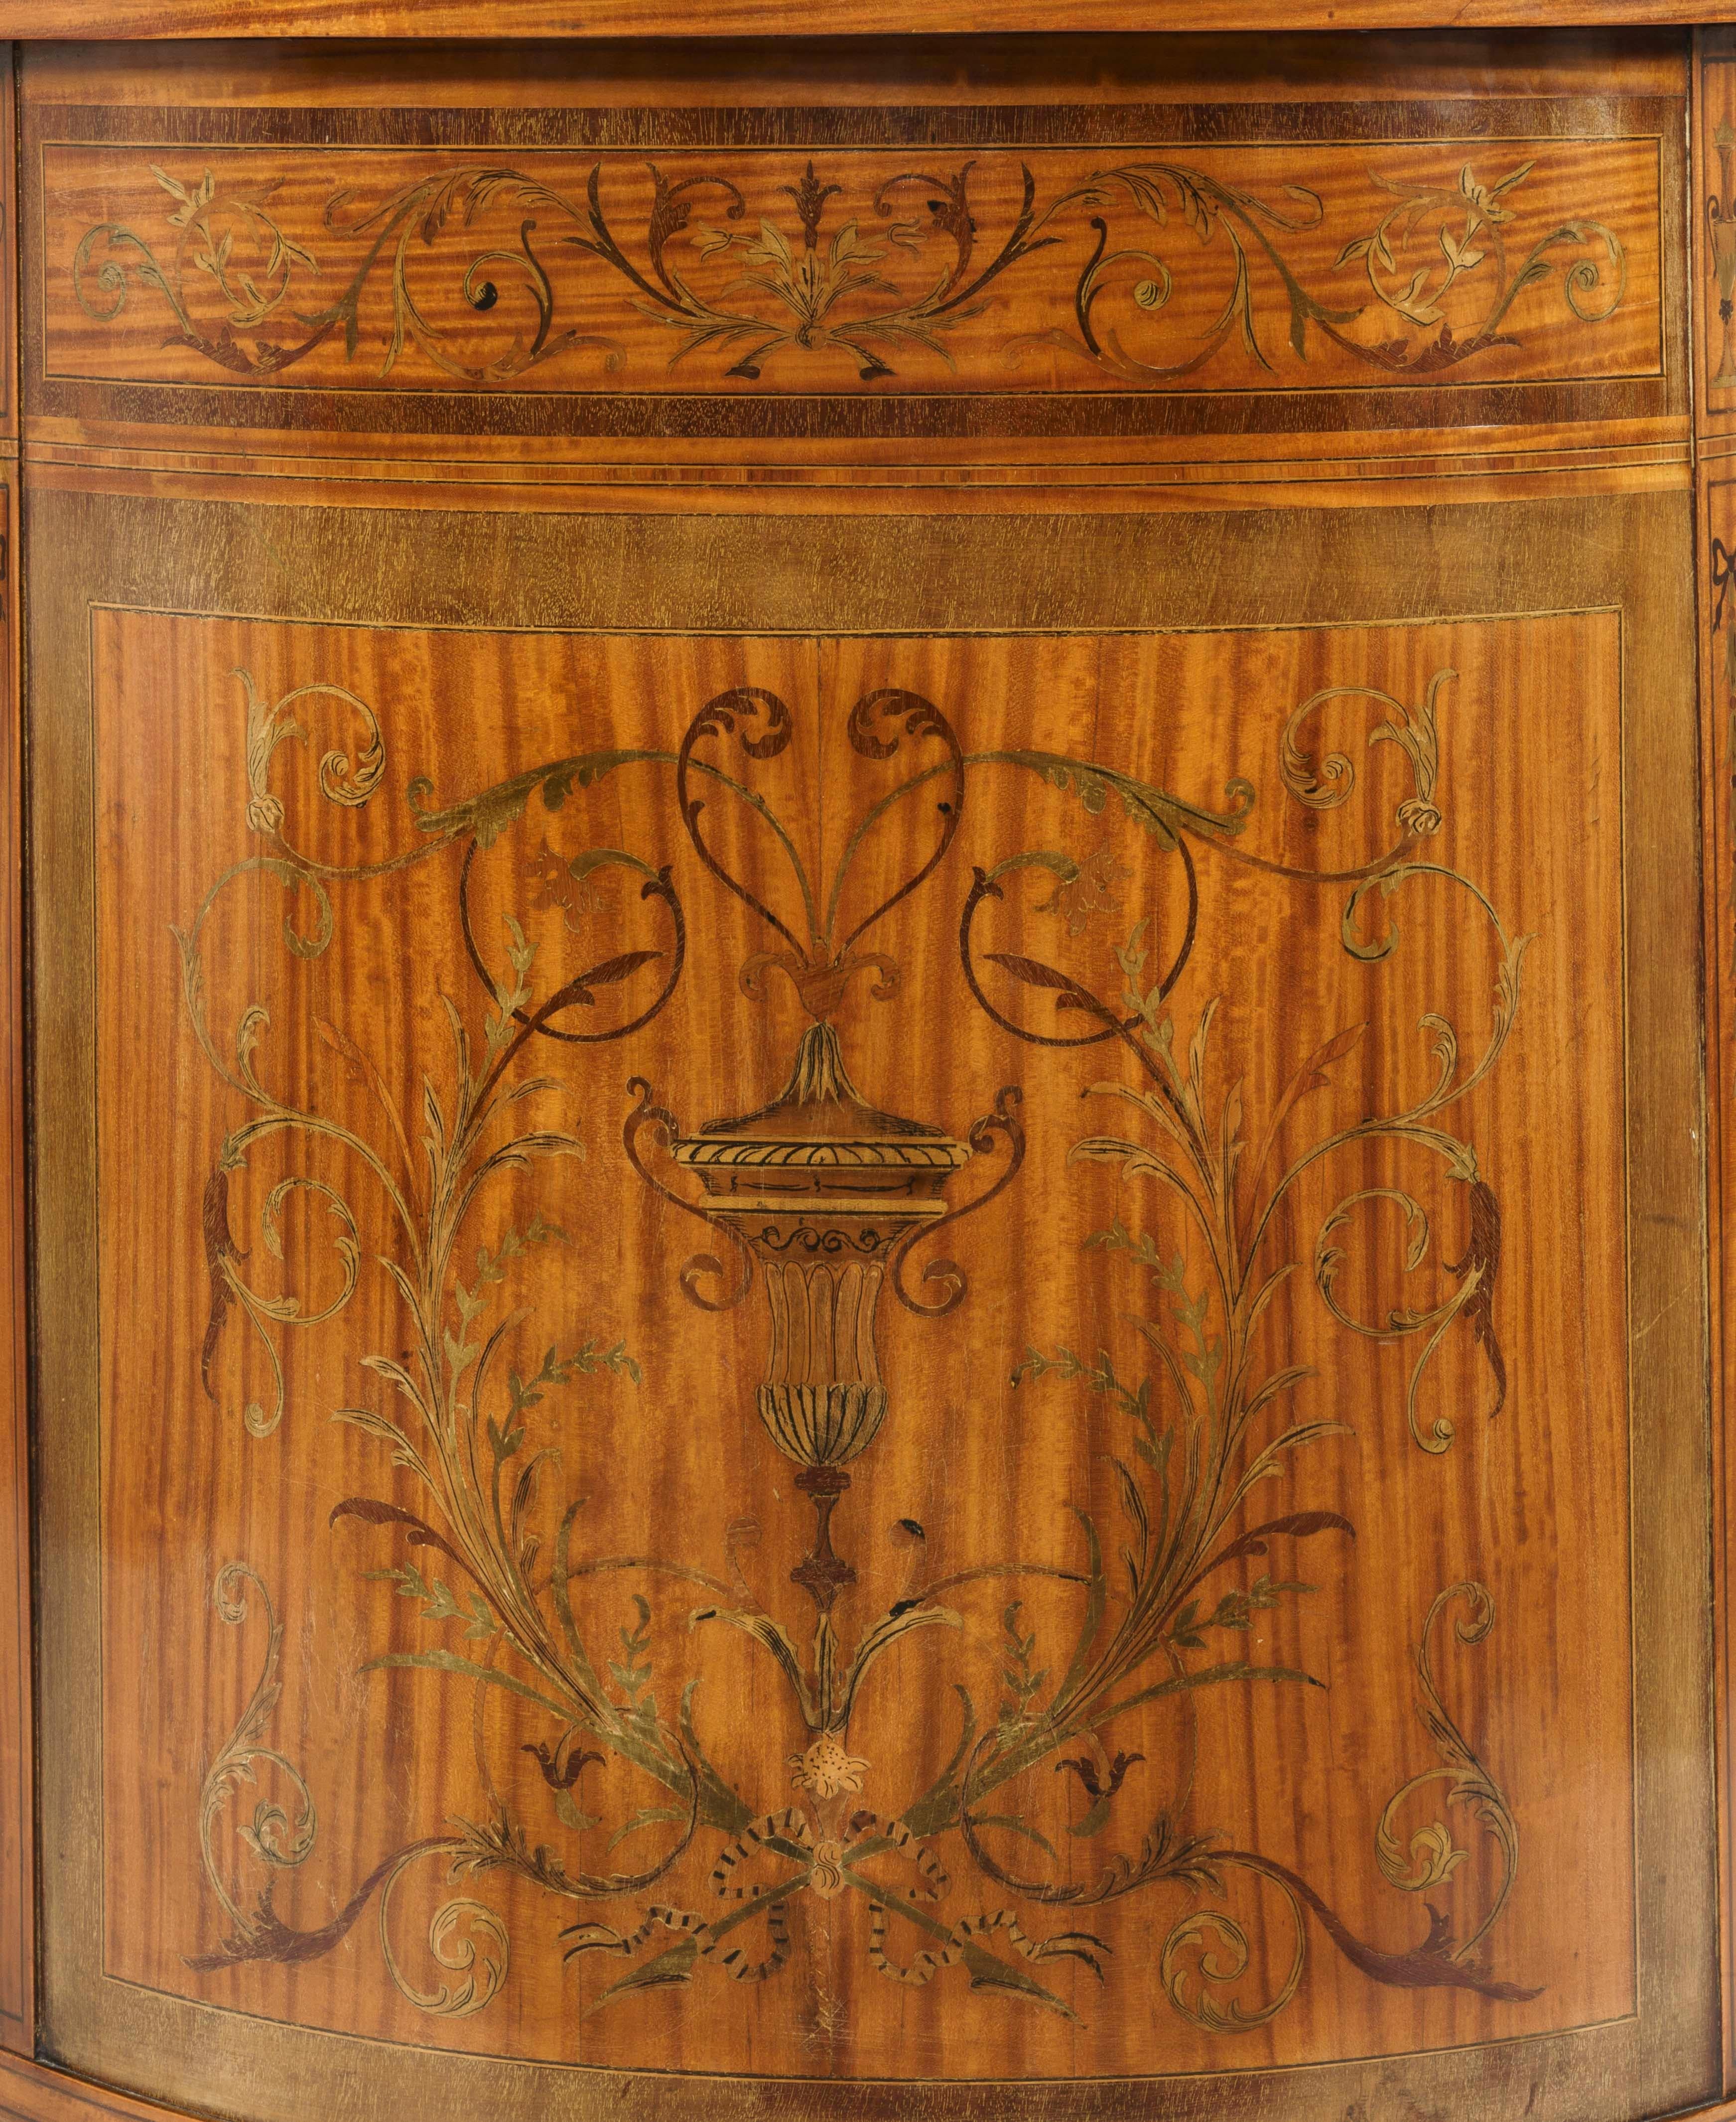 antique kidney shaped desk value